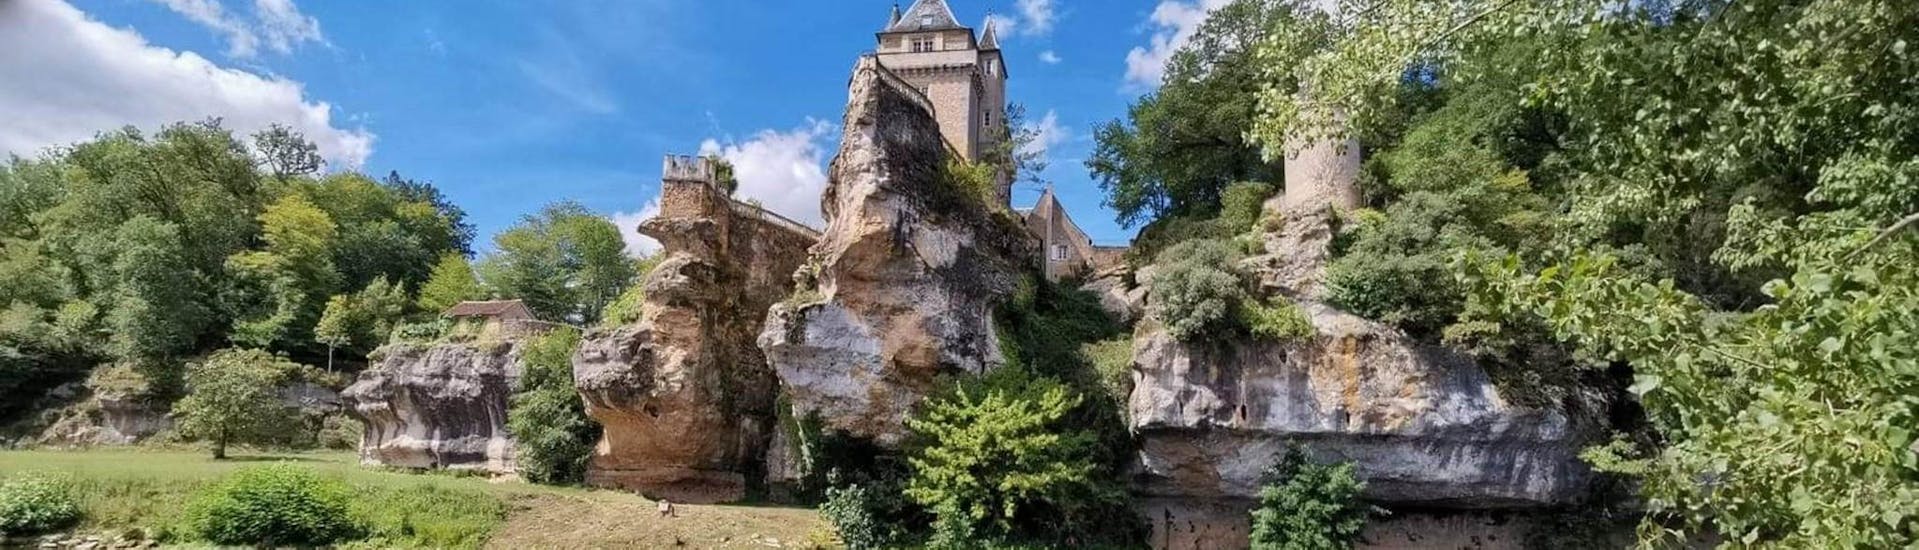 Des touristes contemplent un château depuis la Vézère en canoë lors de la sortie sportive de 17km avec Canoë Family.